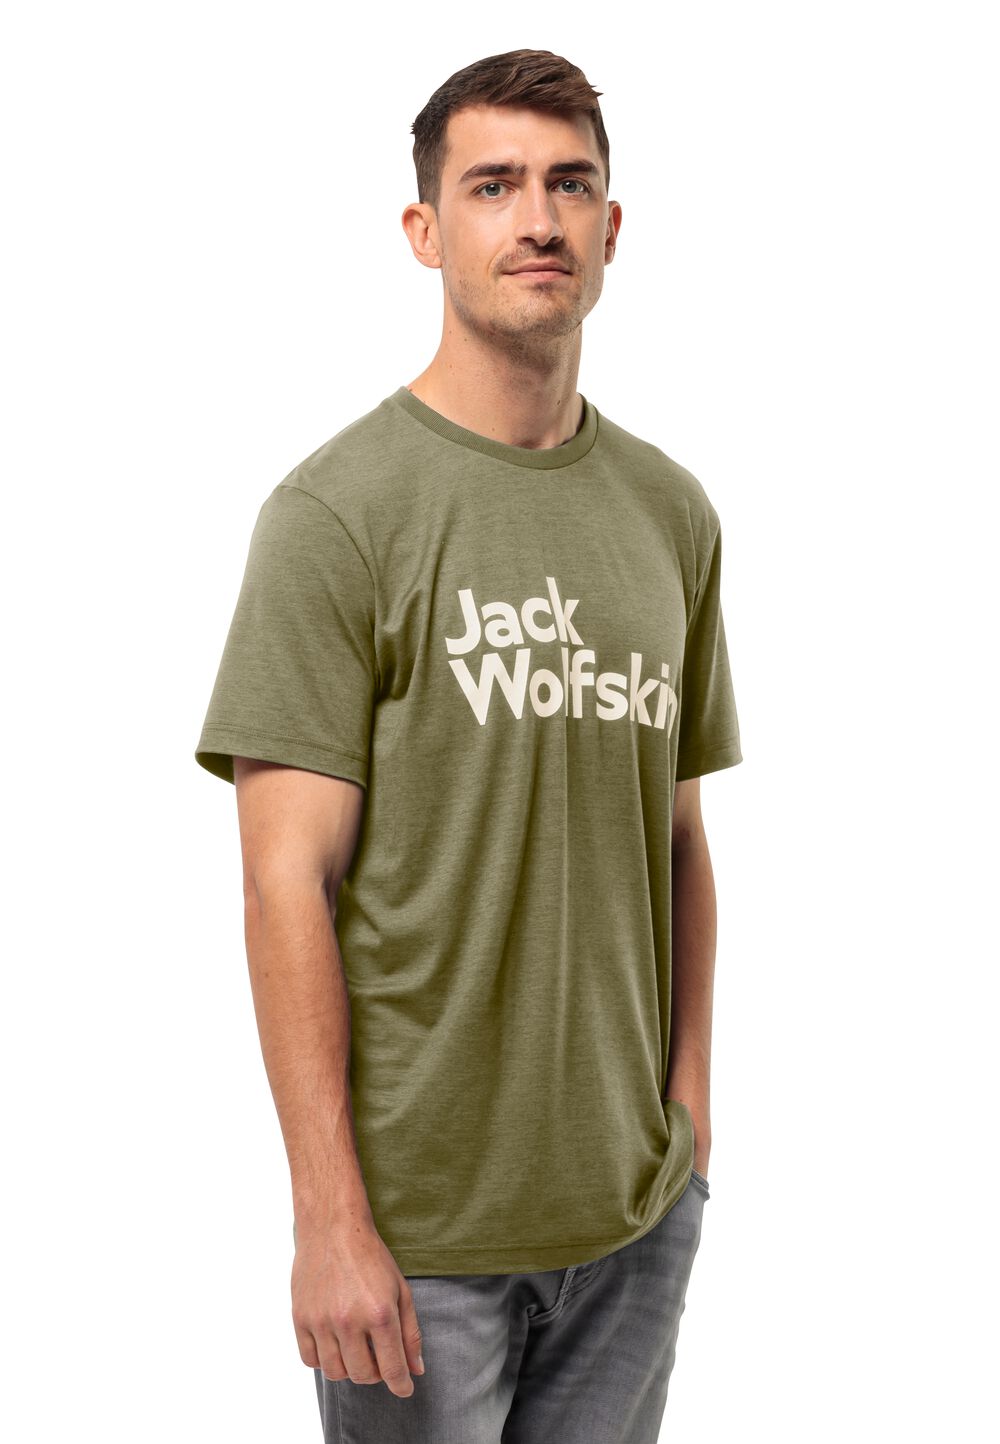 Jack Wolfskin Funktionsshirt Herren Brand T-Shirt Men L braun bay leaf von Jack Wolfskin